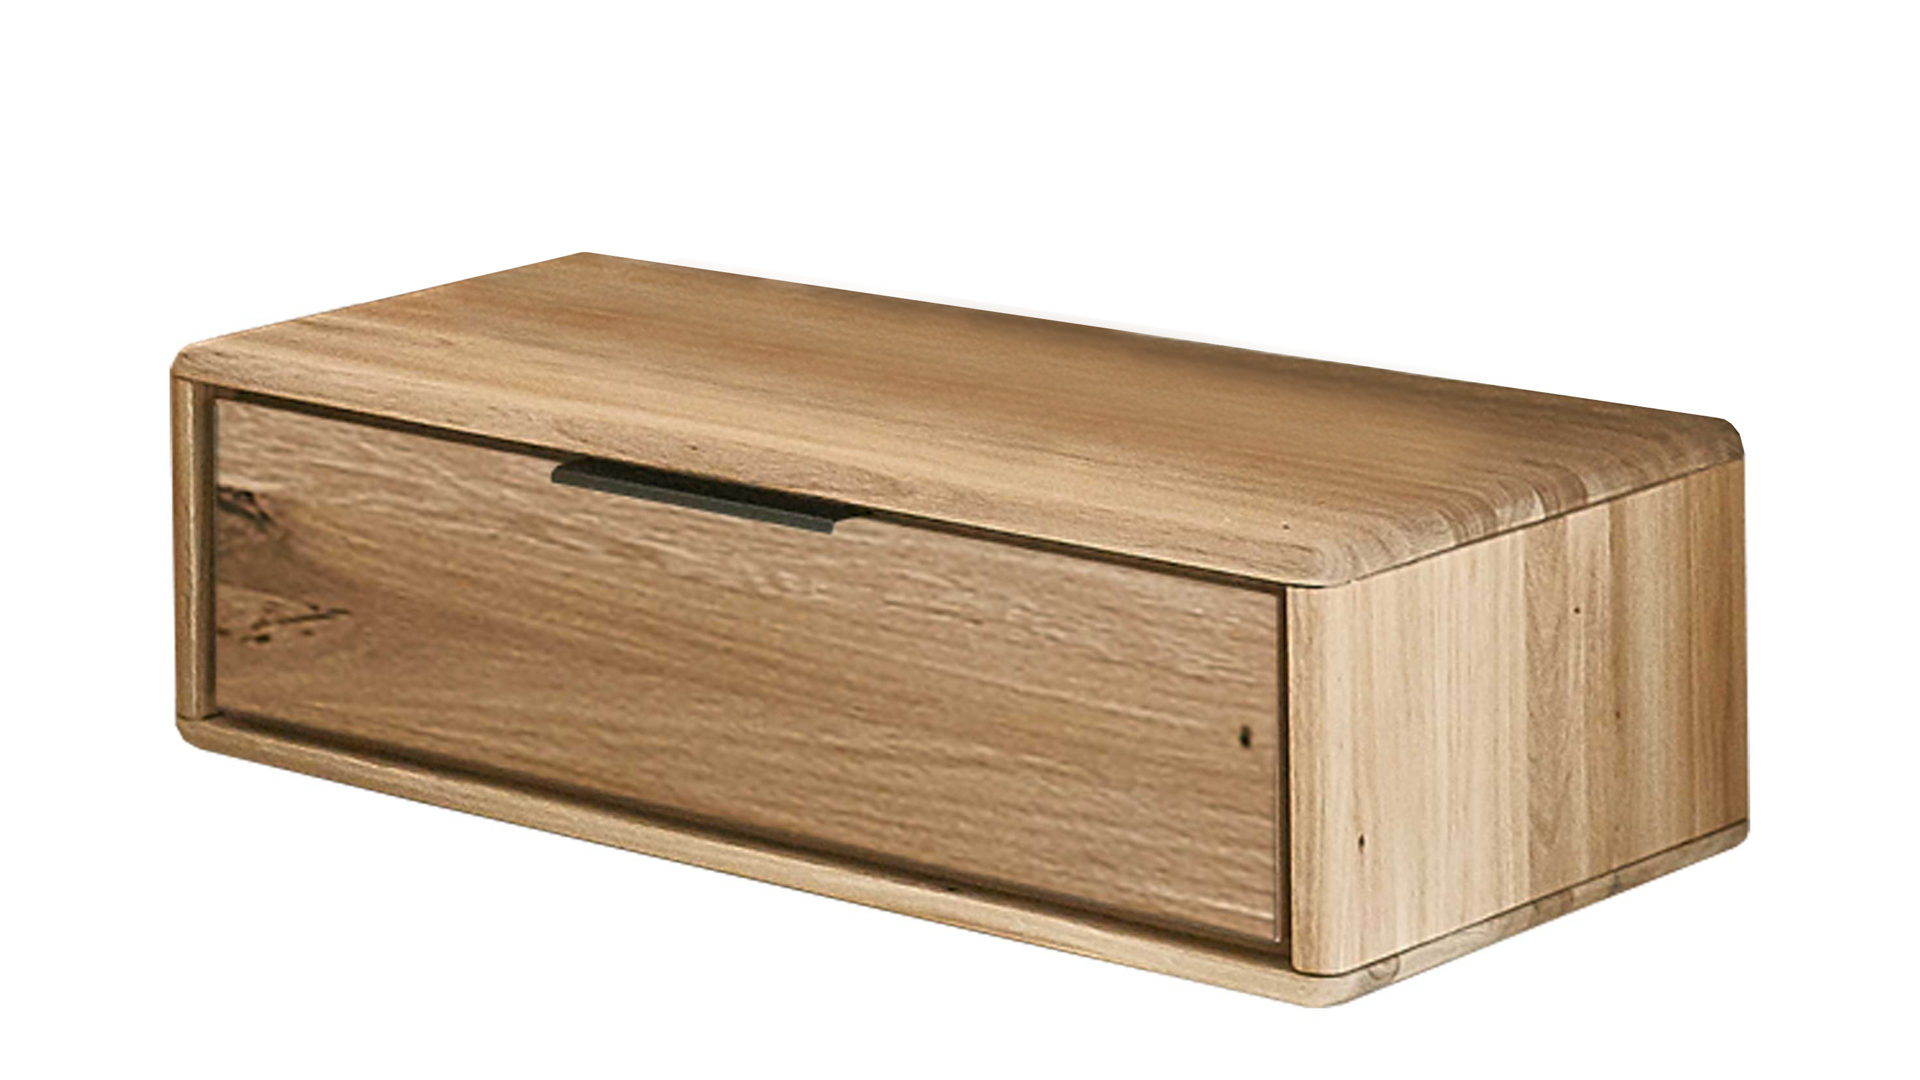 Nachtkommode Wöstmann schlafraumsysteme aus Holz in Holzfarben WÖSTMANN Schlafmöbelprogramm WSM 1600 – Nachtkonsole Wildeiche – eine Schublade, links